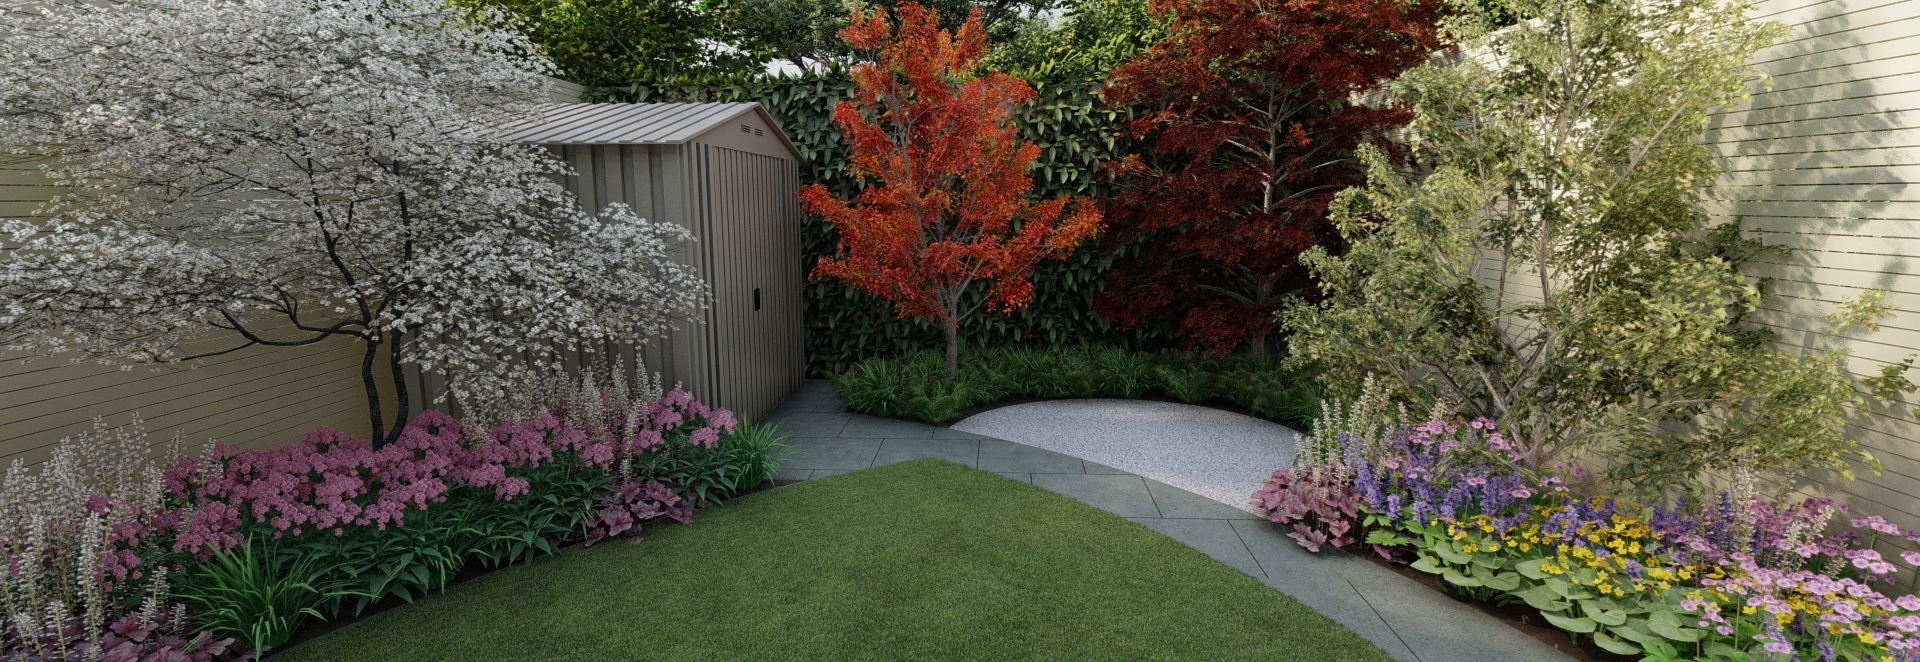 Garden Design Dublin 12 | 3D Design Visuals for small Family Garden in Dublin 12